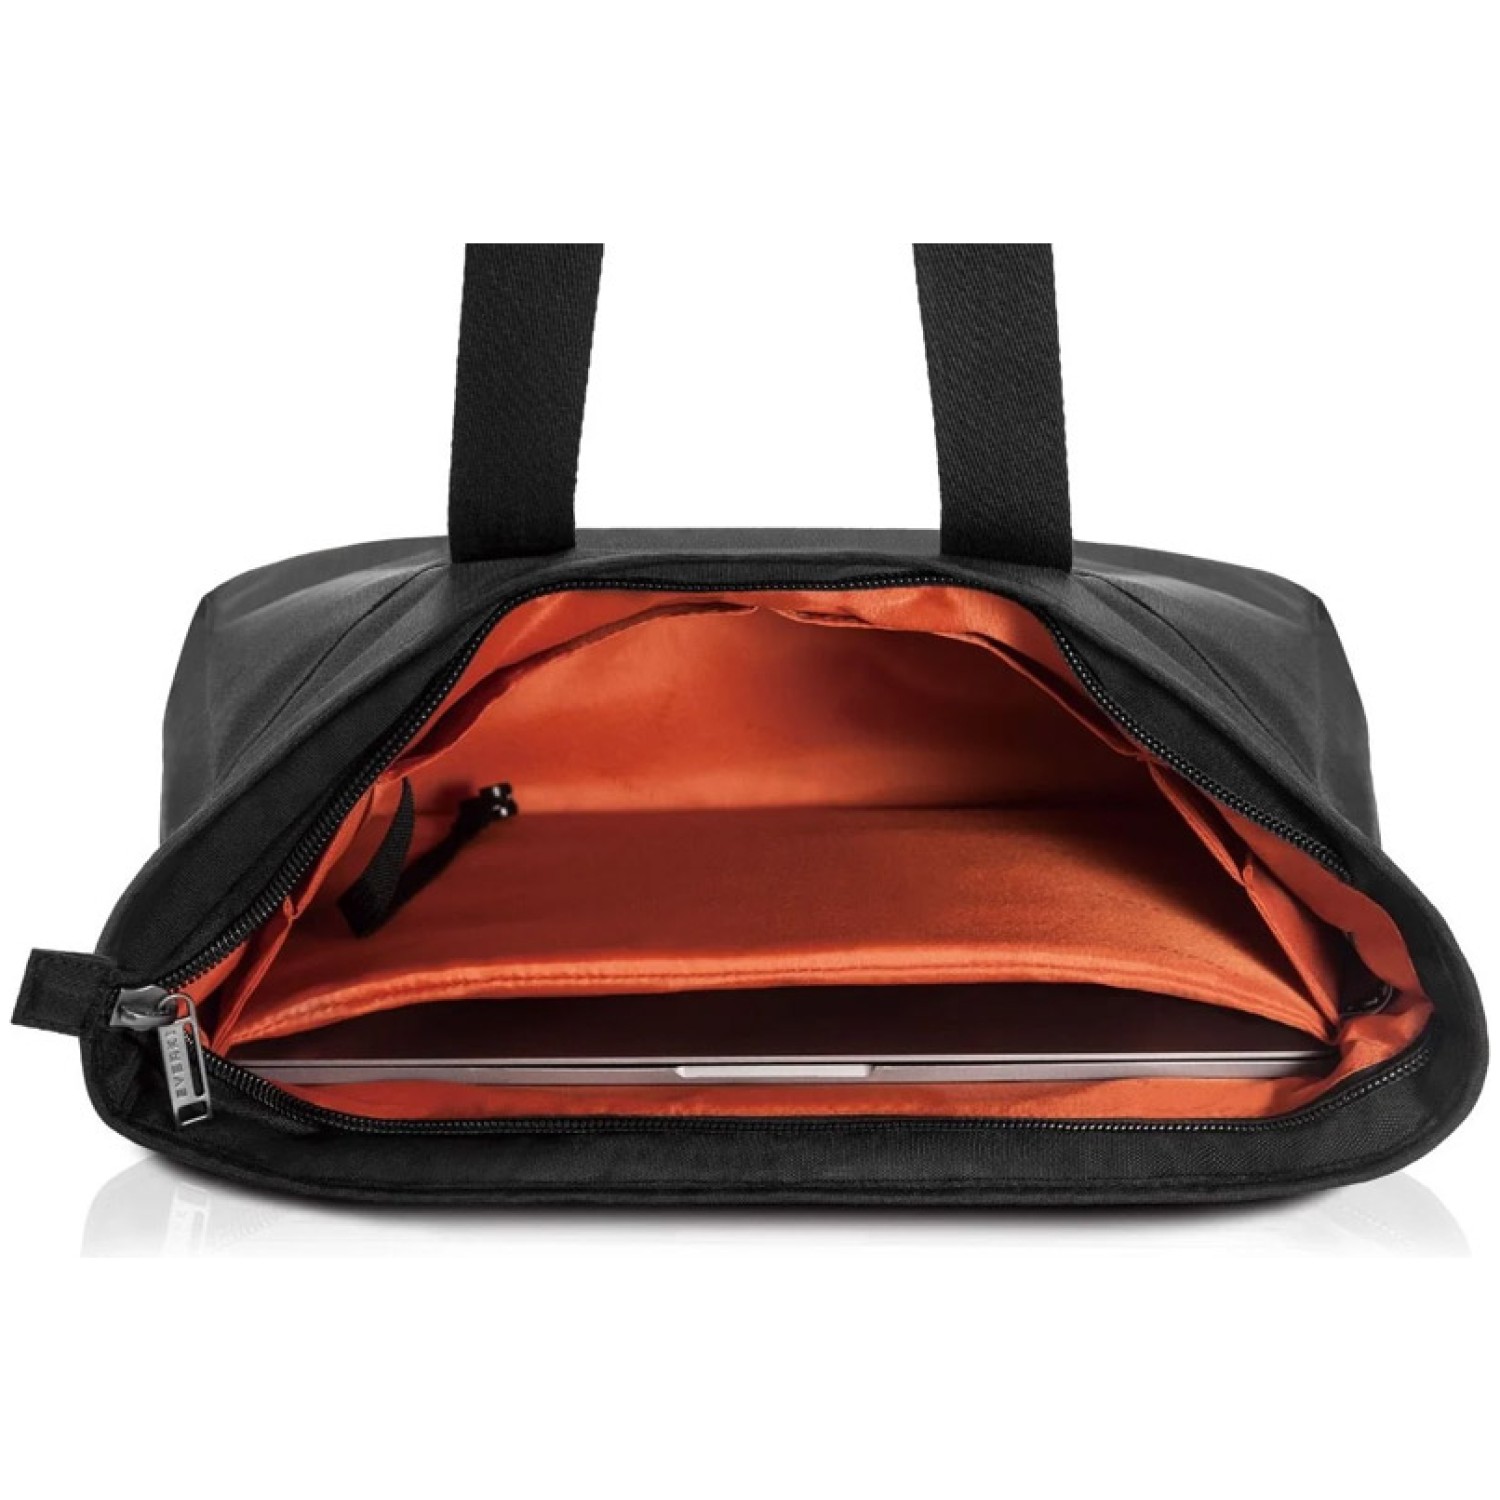 6-palčni Ta kompaktna torbica bo dobro služila za vsakodnevne vožnje v pisarno in iz nje ali kakršno koli poslovno potovanje. Tanjša in bolj ženstvena kot torba za prenosnik v slogu aktovke